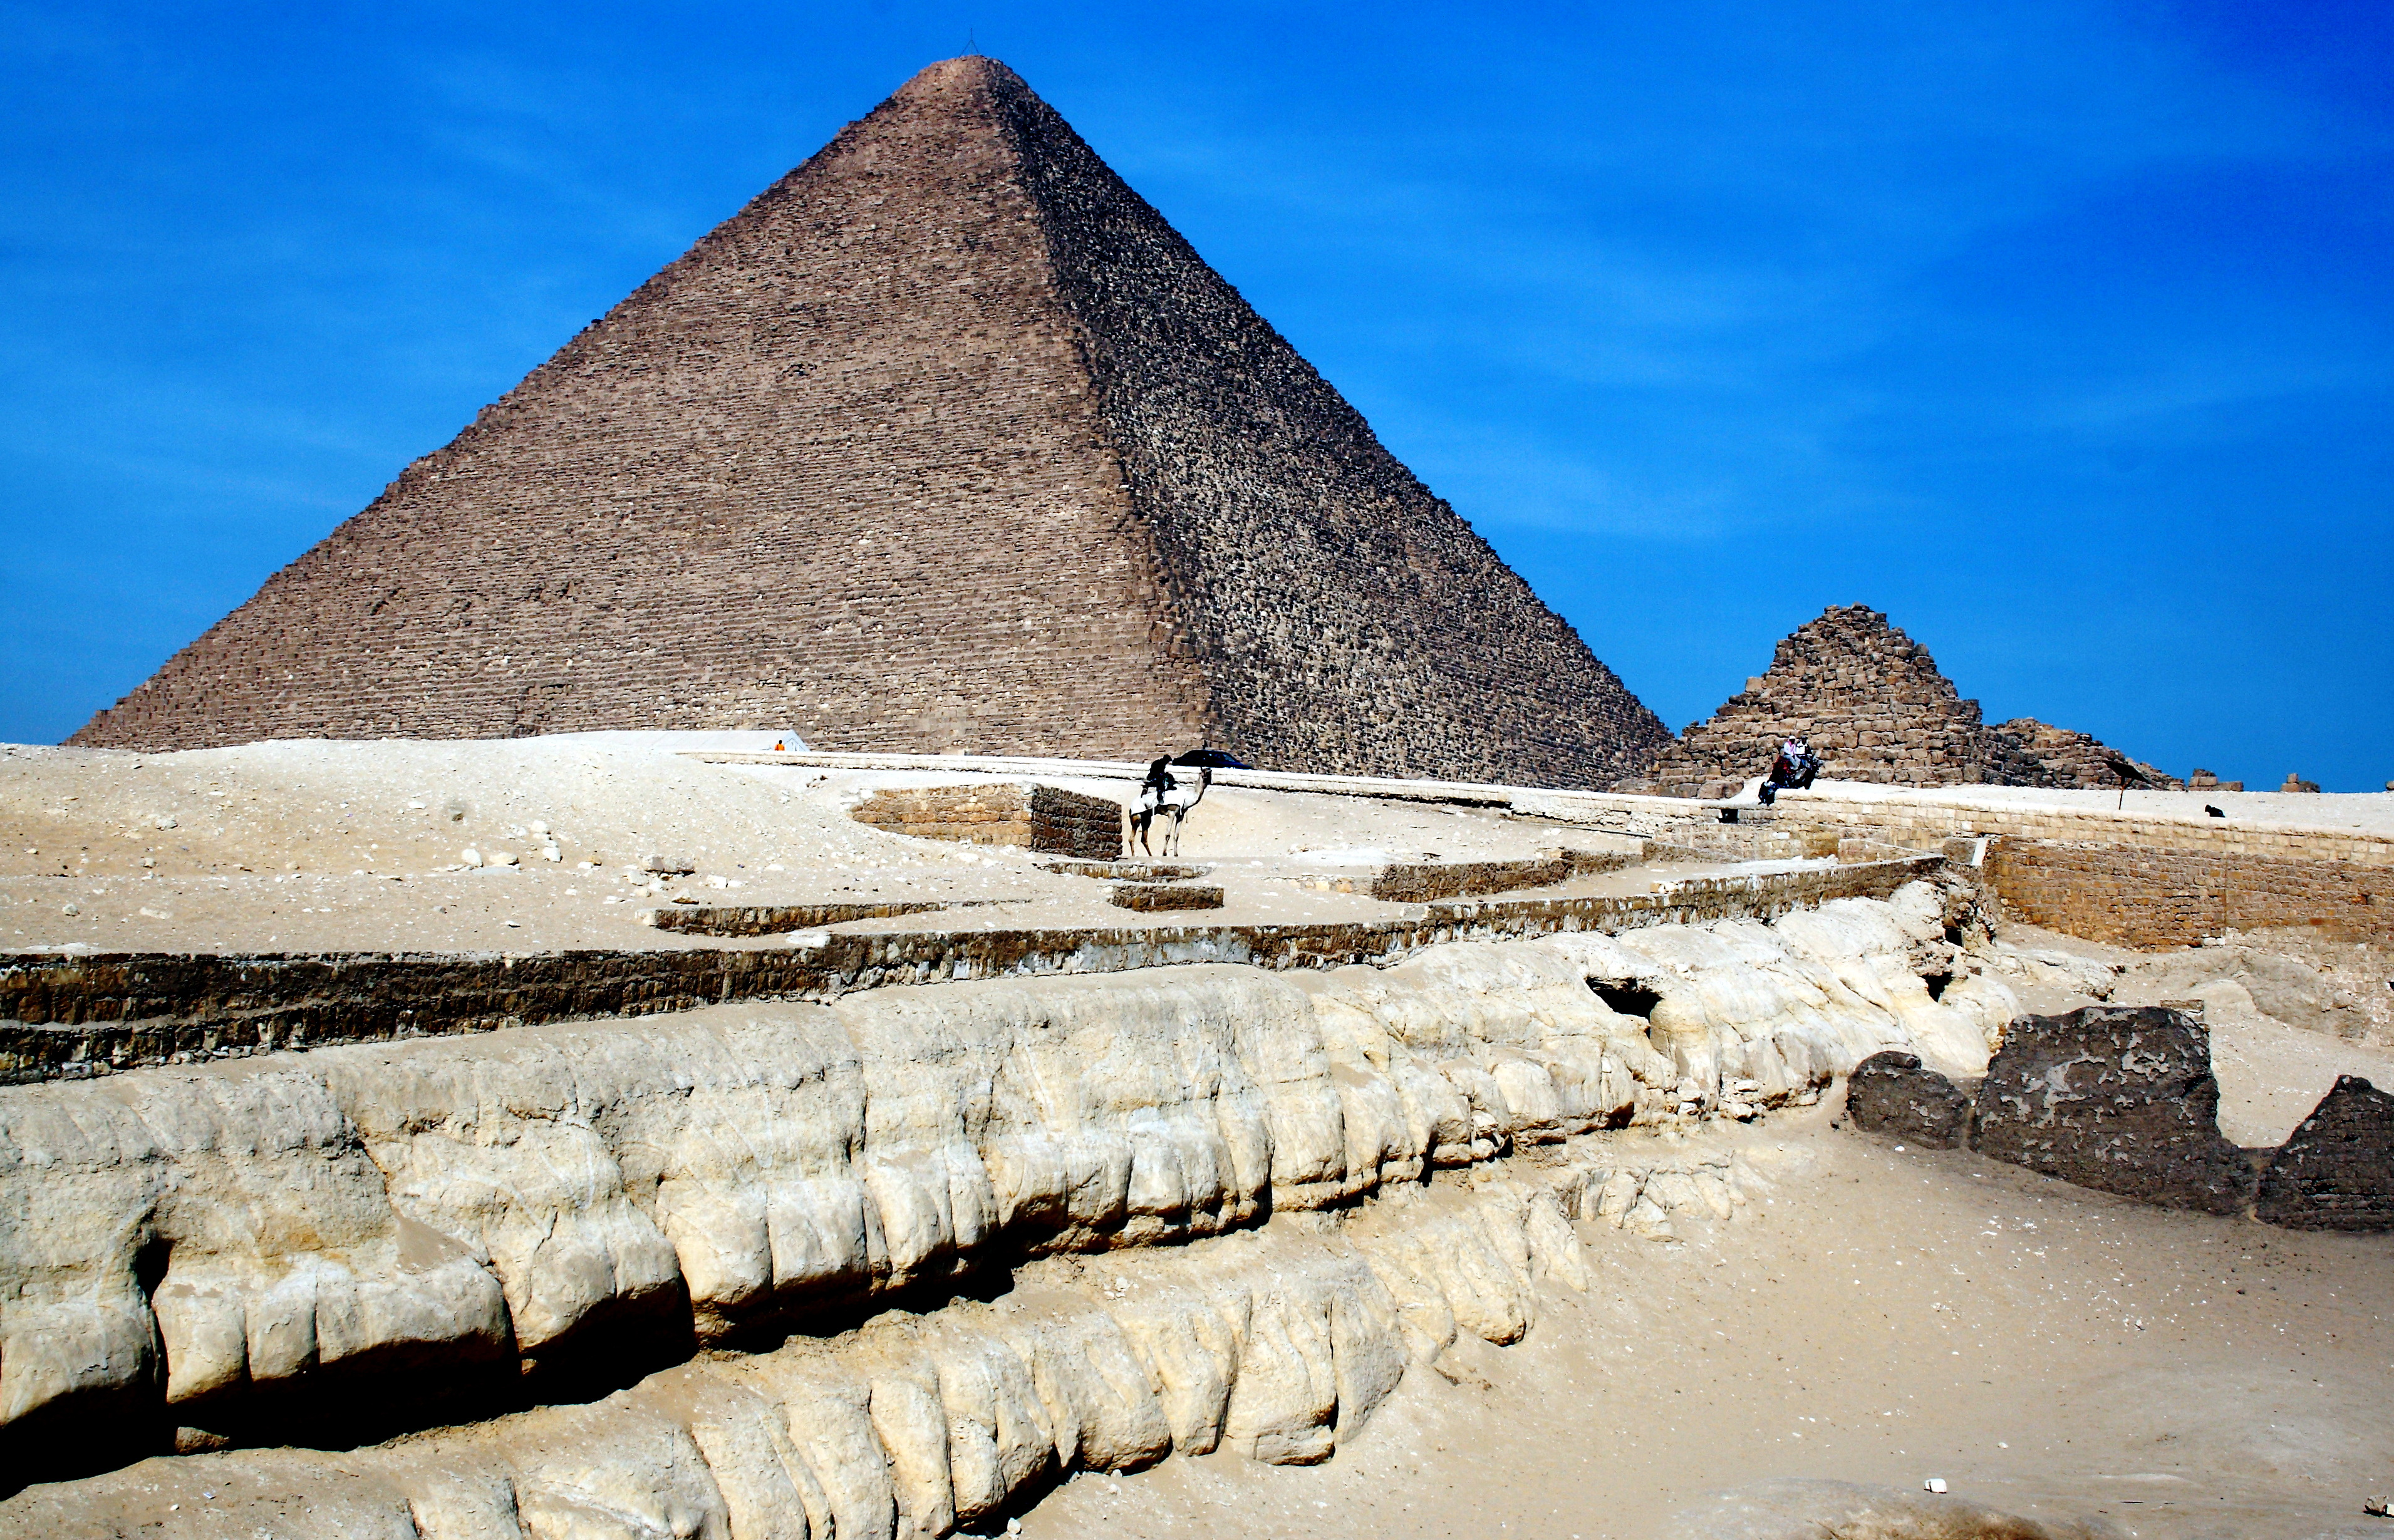 La Piramide di Cheope